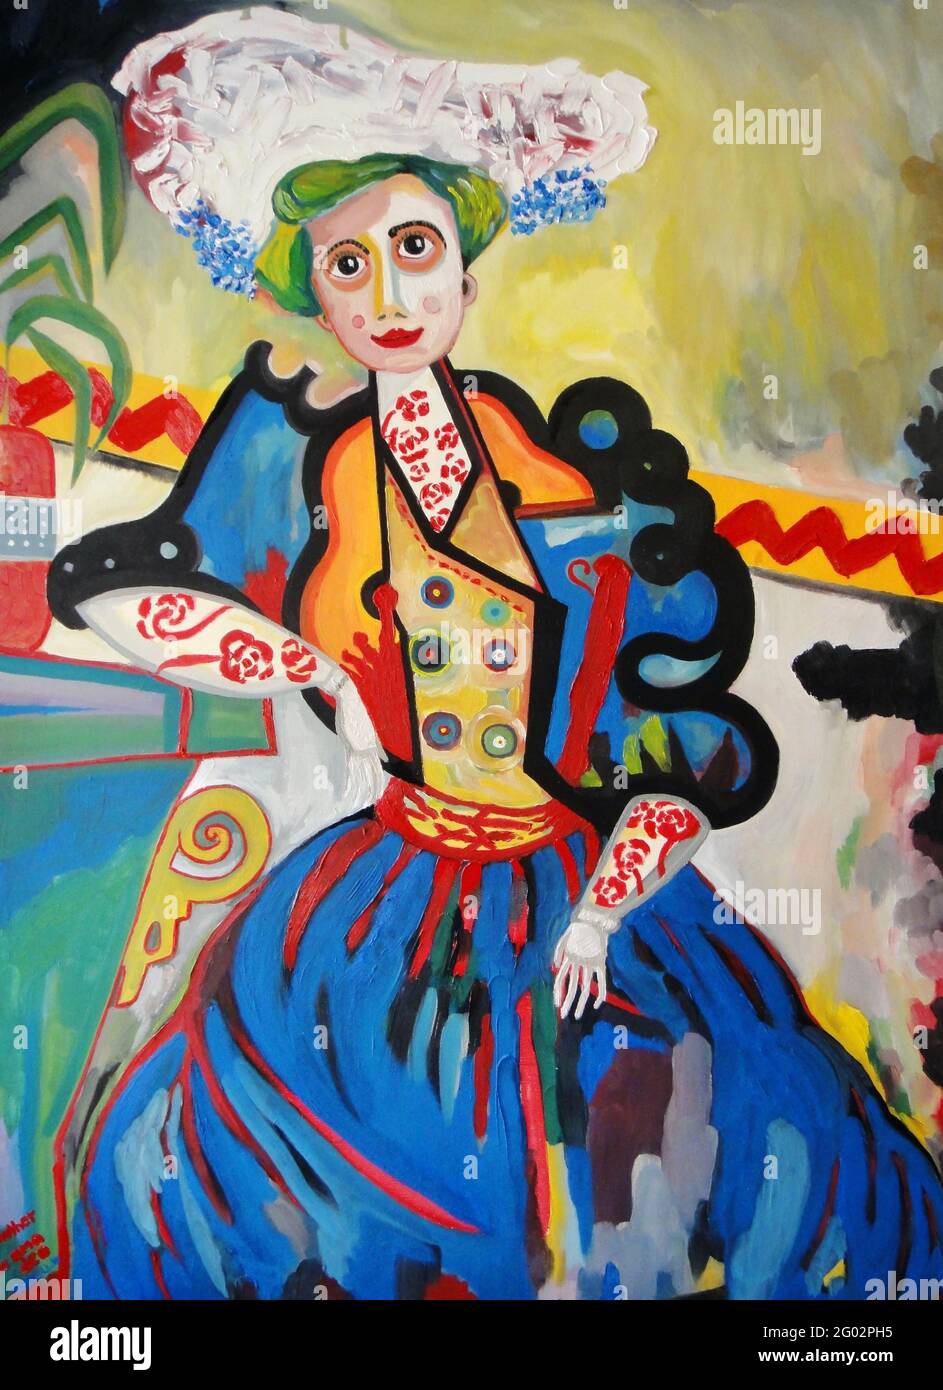 Amadeo de Souza-Cardoso artwork - The Woman - A Muhler - donna molto colorata che sembra divertente con. Foto Stock